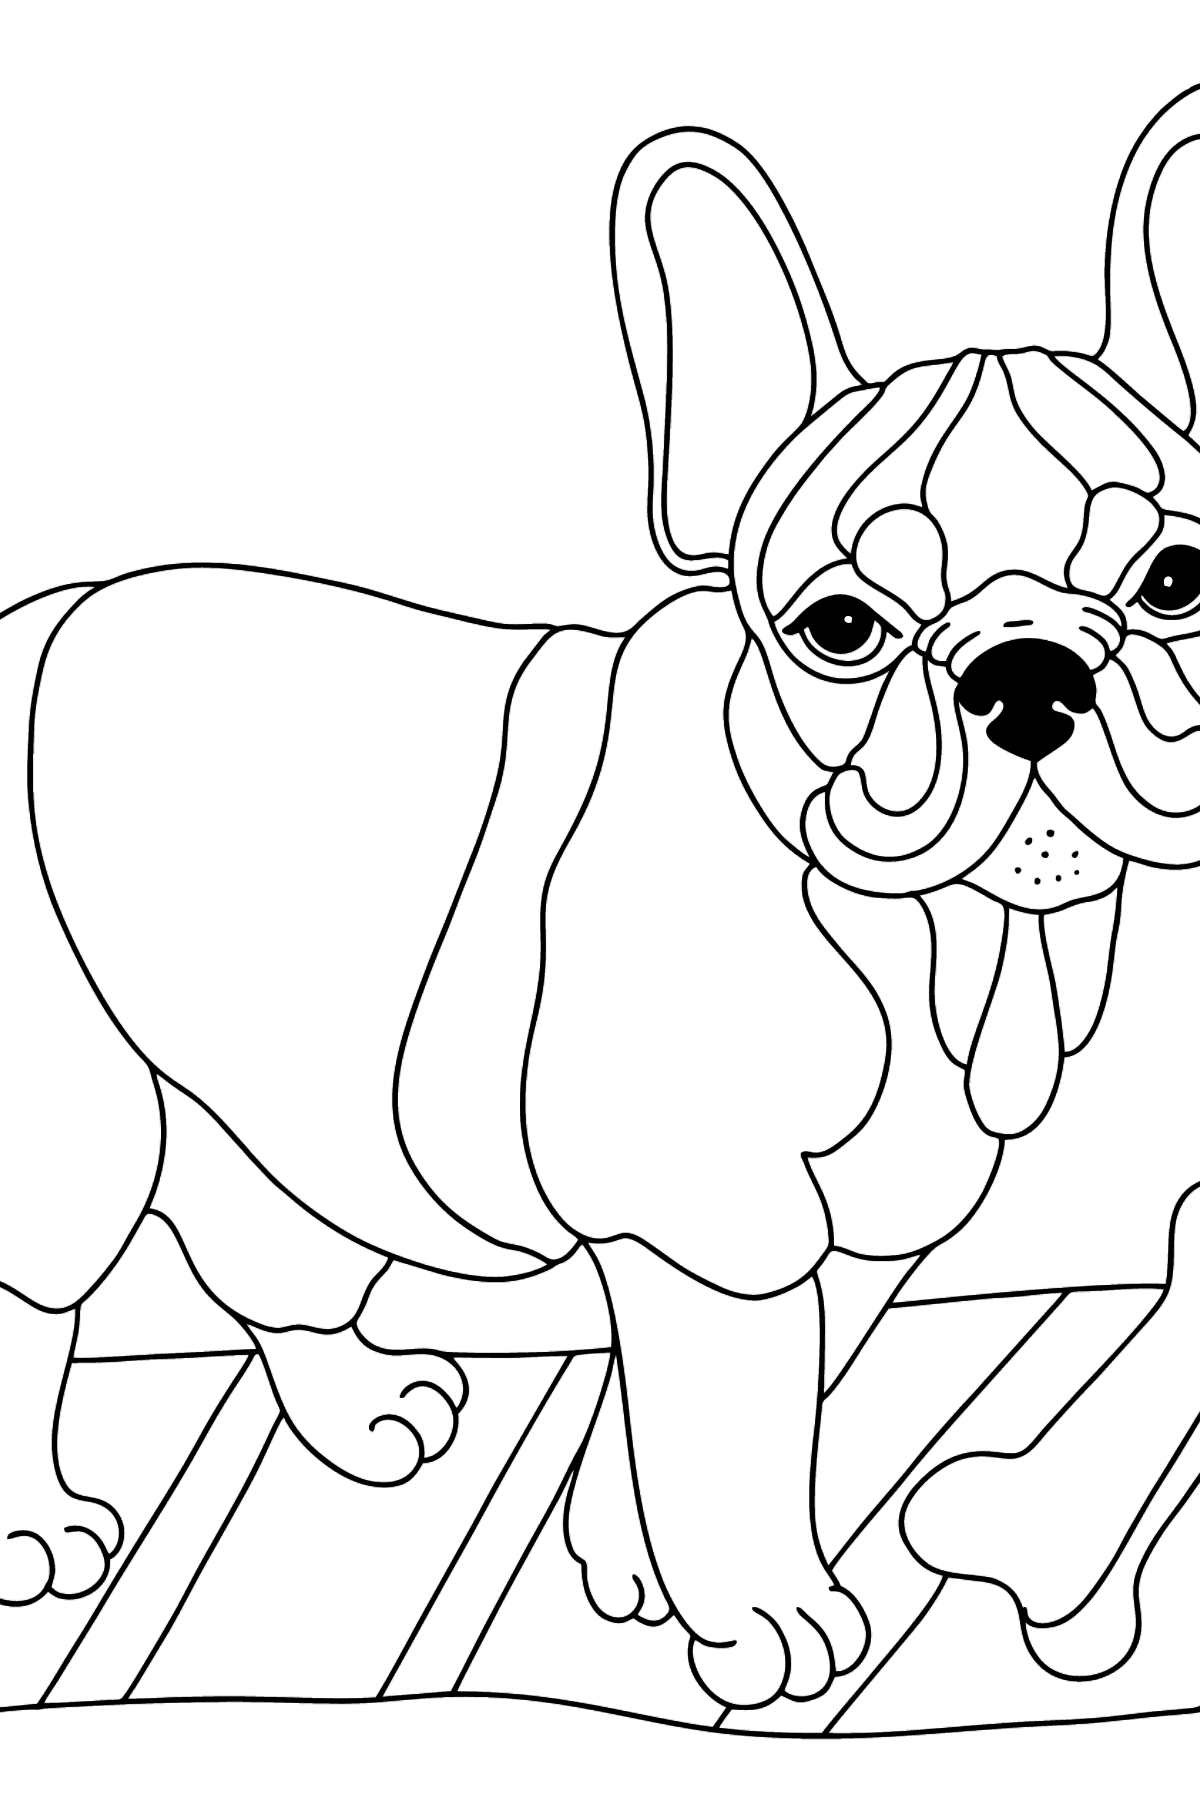 Värityskuva ranskanbulldoggi (vaikea) - Värityskuvat lapsille